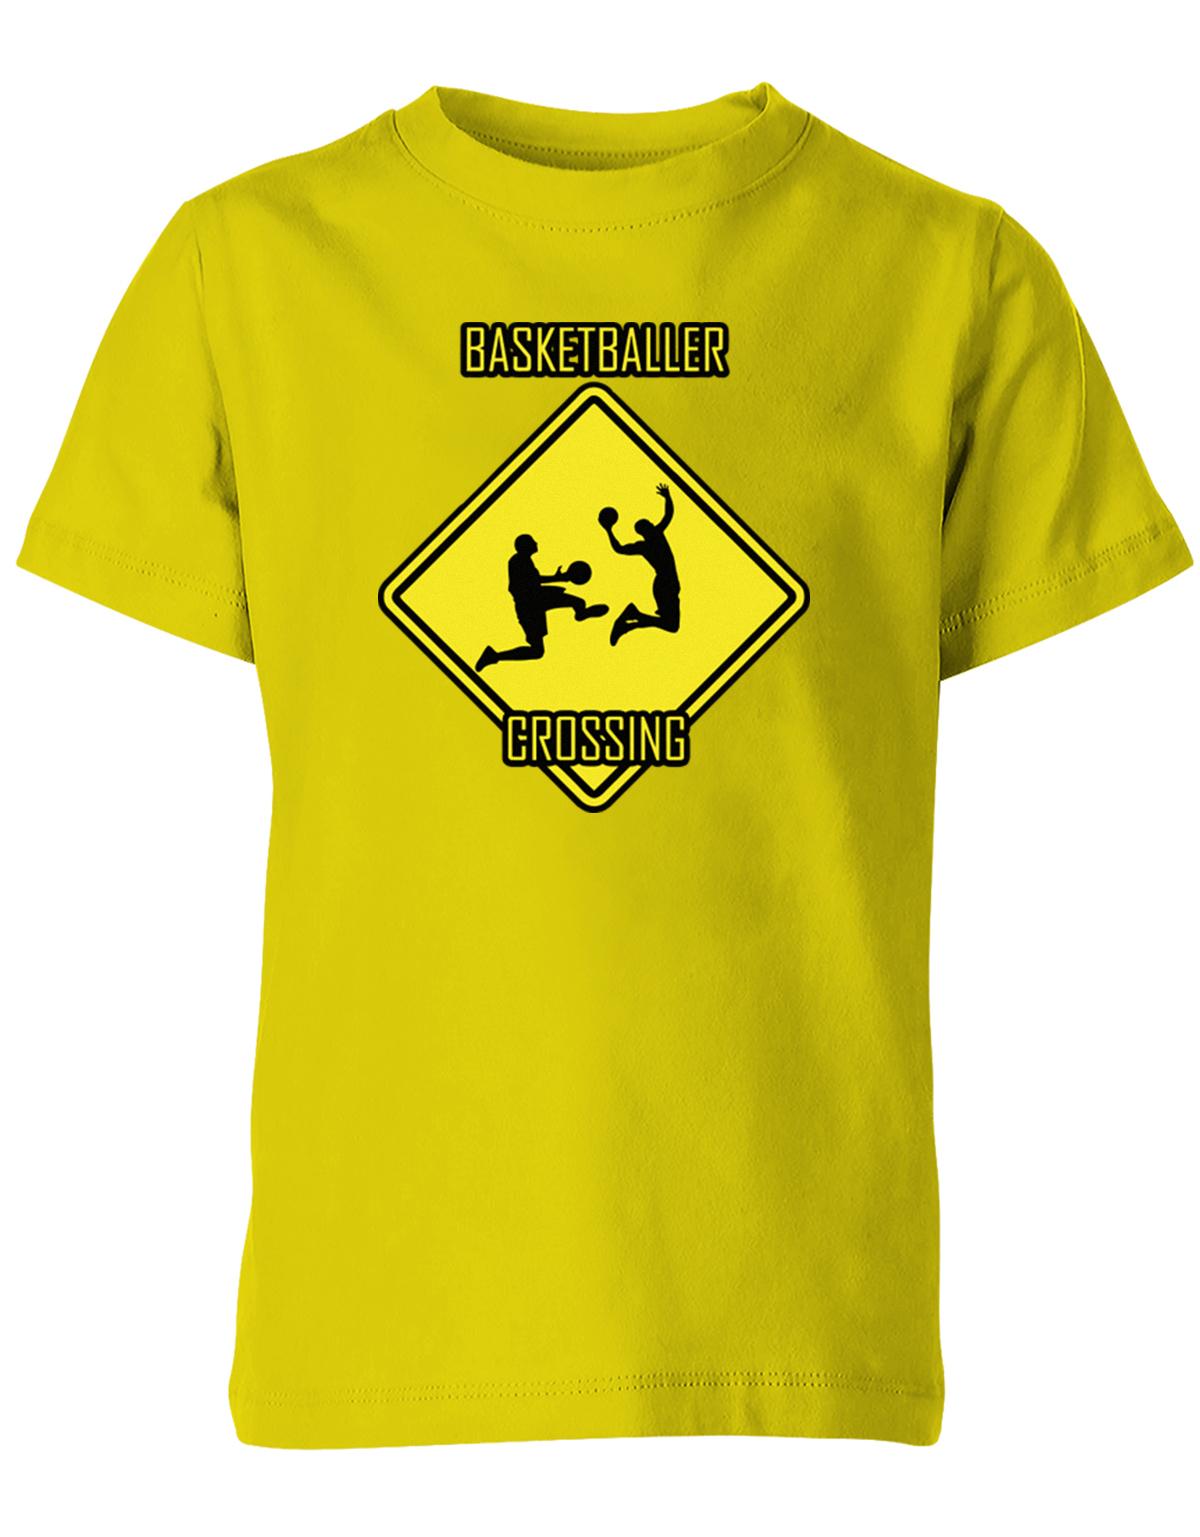 BAsketballer-Crossing-Kinder-Shirt-Gelb